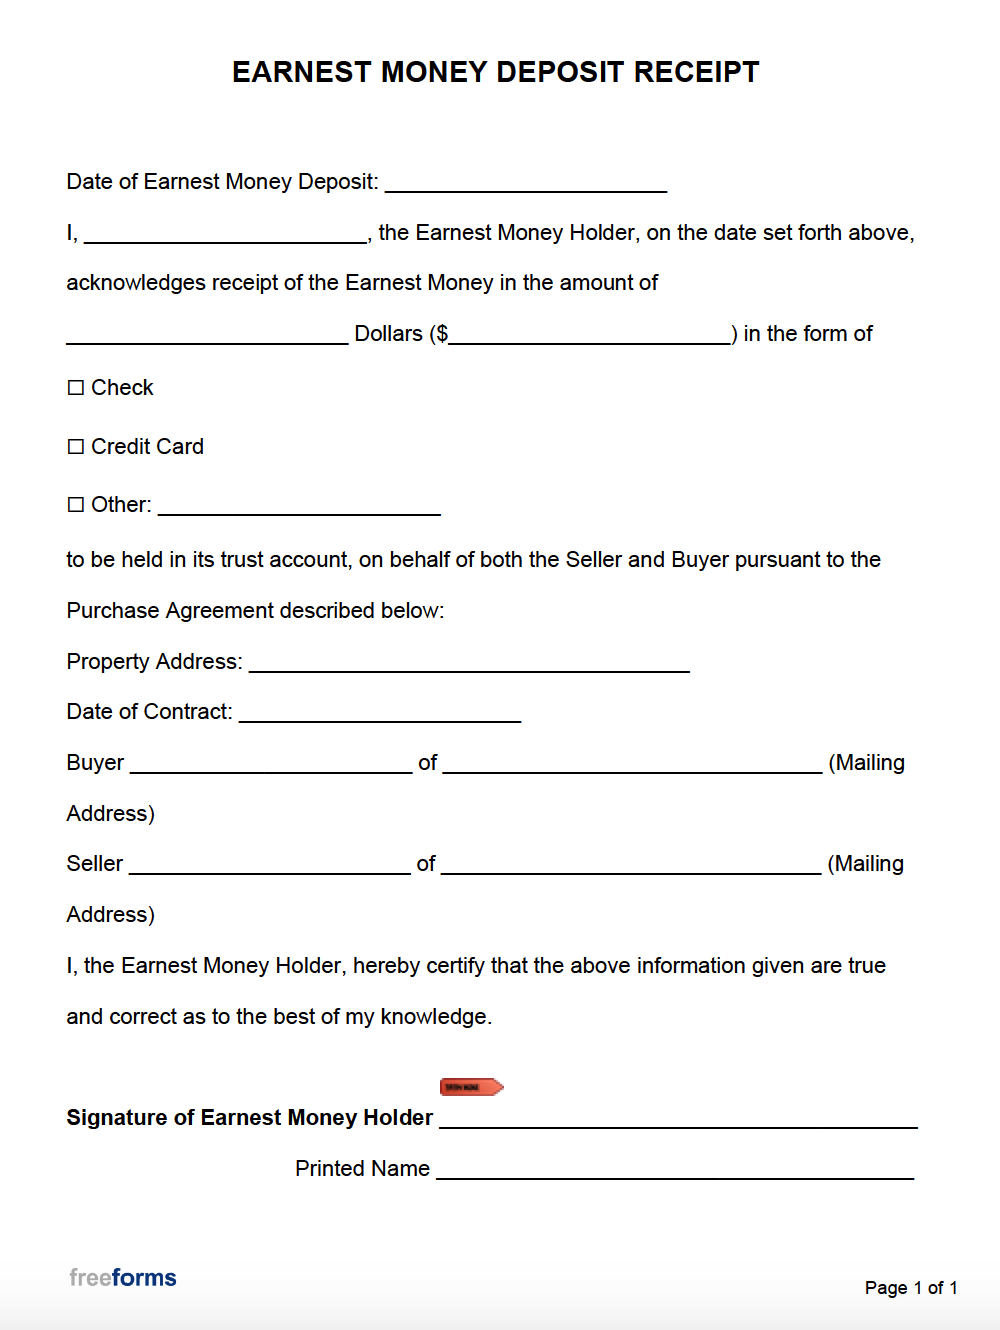 Free Earnest Money Receipt  PDF  WORD Within earnest money deposit agreement template